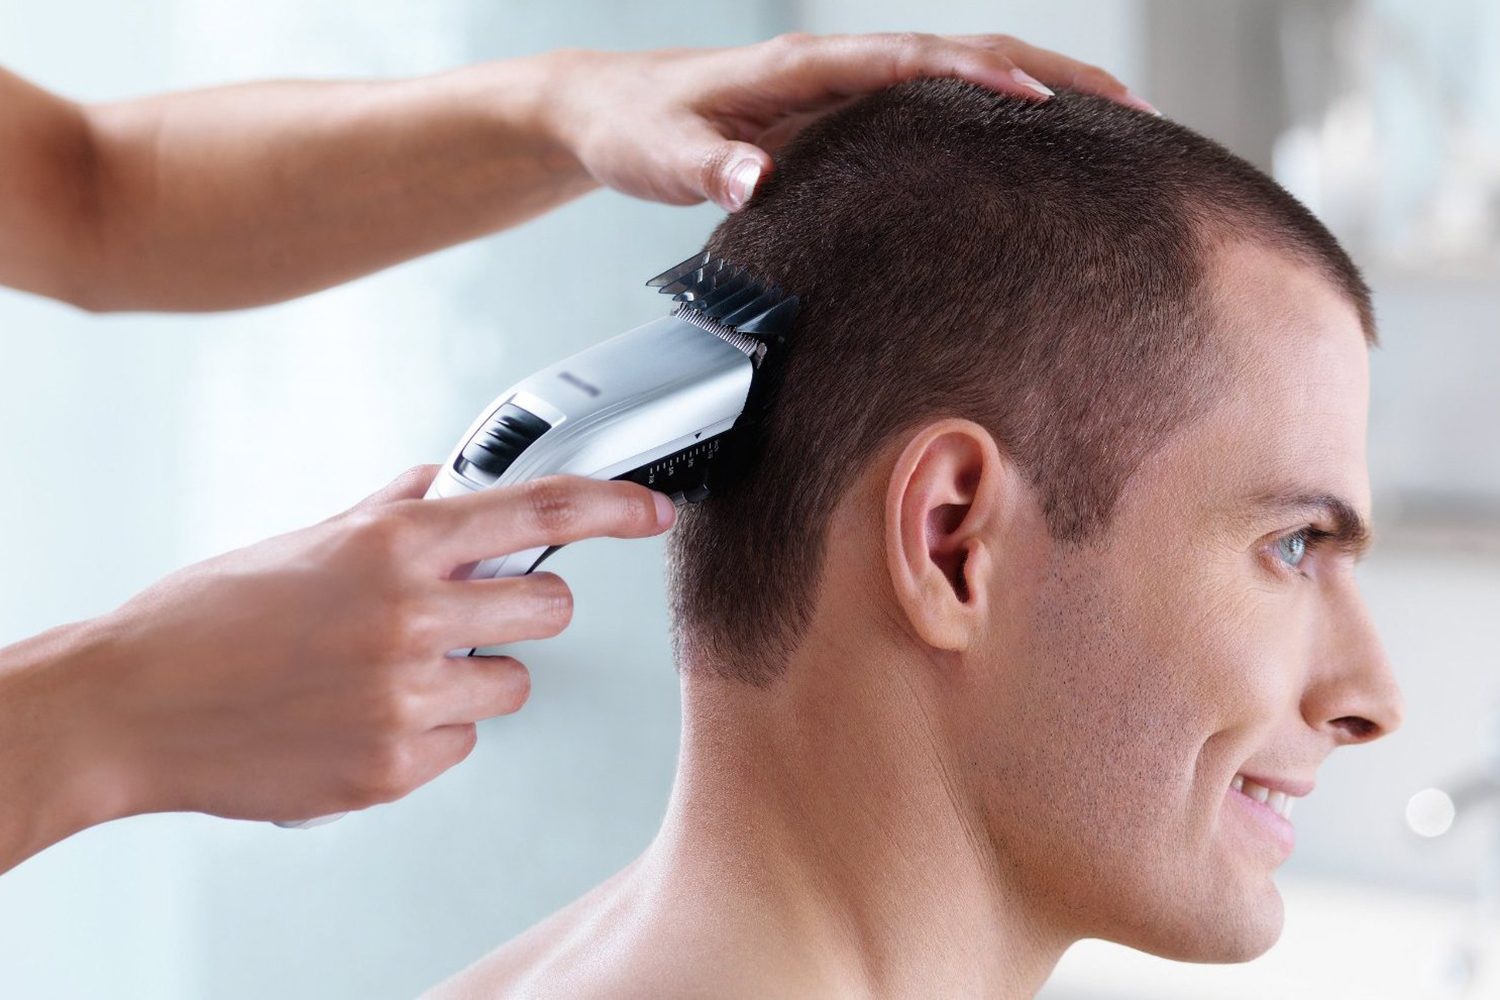 Cắt tóc bằng tông đơ đang trở thành xu hướng mới của người đàn ông hiện đại. Hãy xem hình ảnh và cảm nhận sự chính xác và nhanh nhẹn của việc sử dụng tông đơ để cắt tóc.